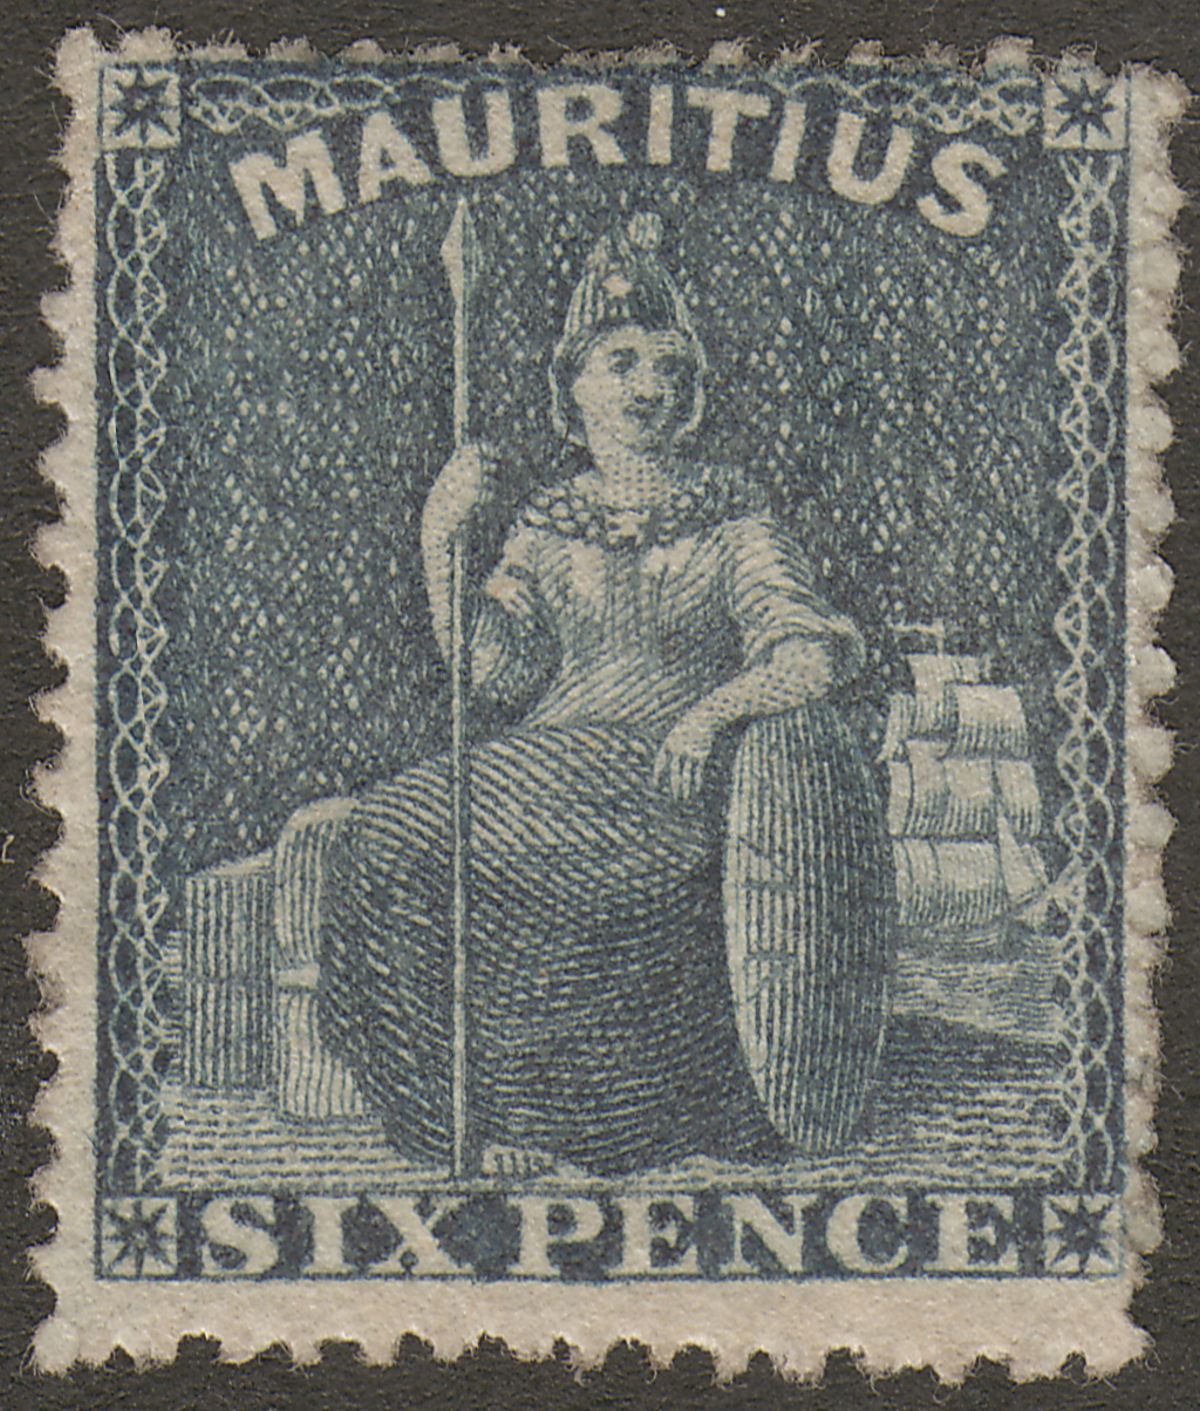 Mauritius 1862 QV Britannia 6d Slate Perforated Unused SG54 cat £42 as mint